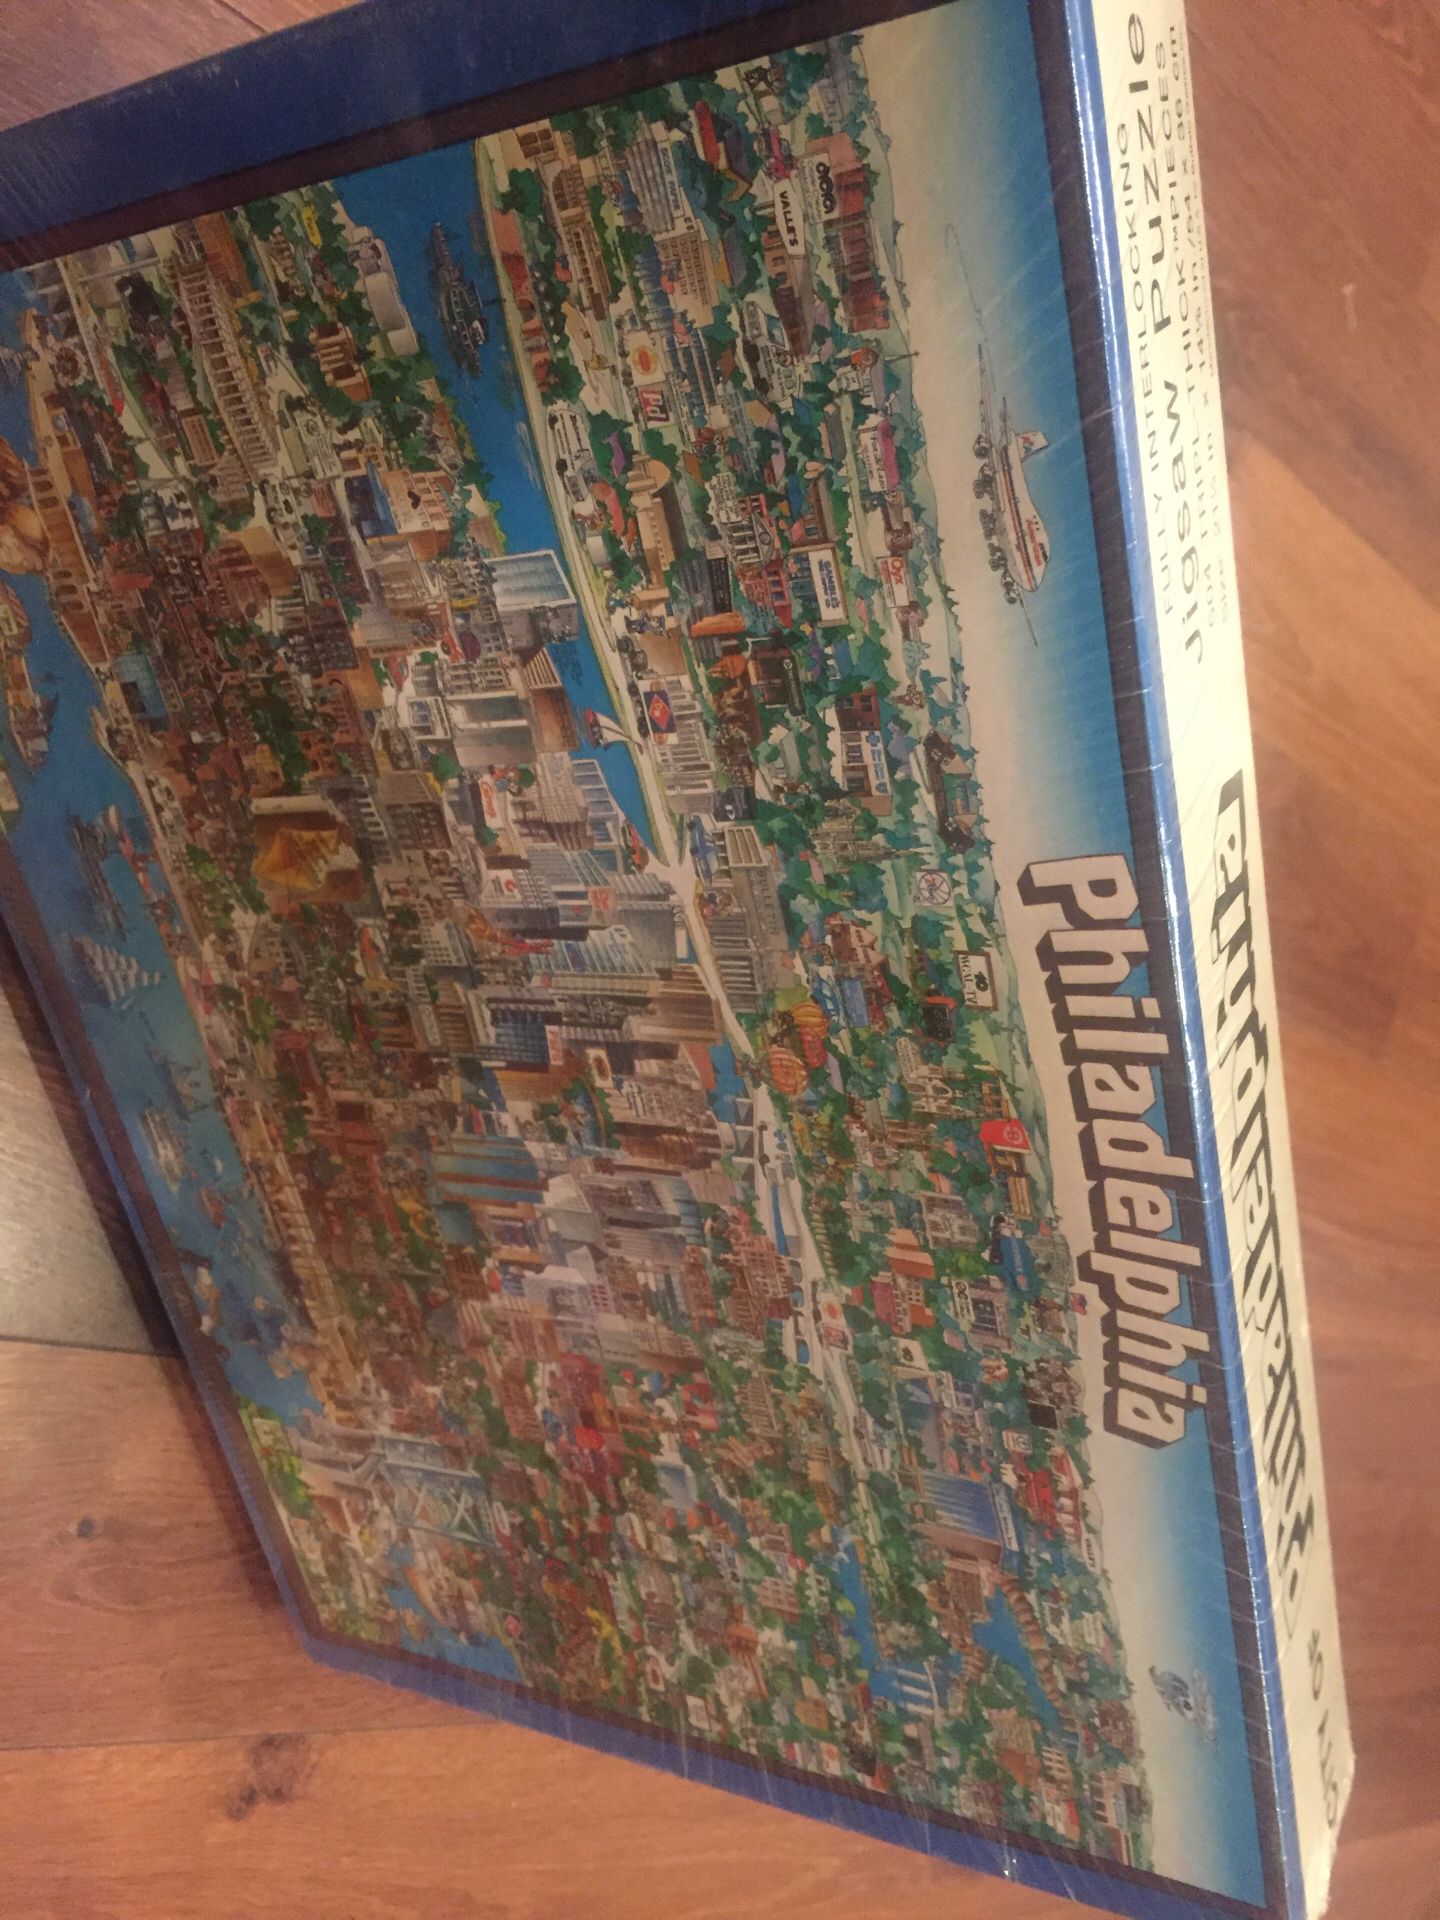 NEW city of Philadelphia puzzle - 504 pieces. Hard puzzle!